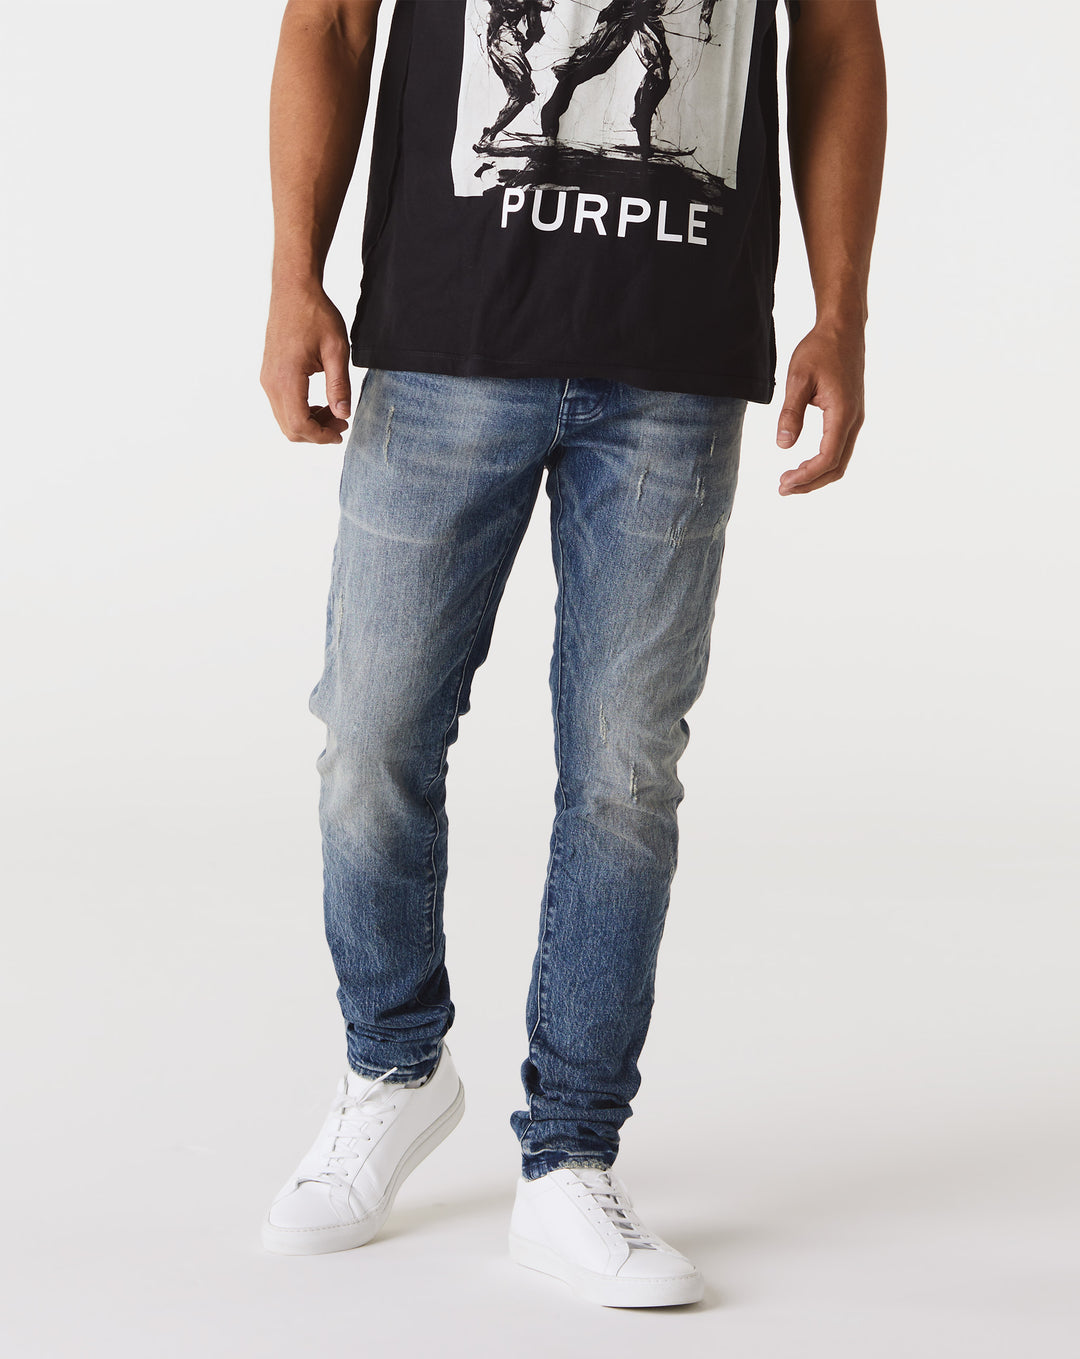 Purple Brand P001 Low Rise Slim Jeans  - XHIBITION